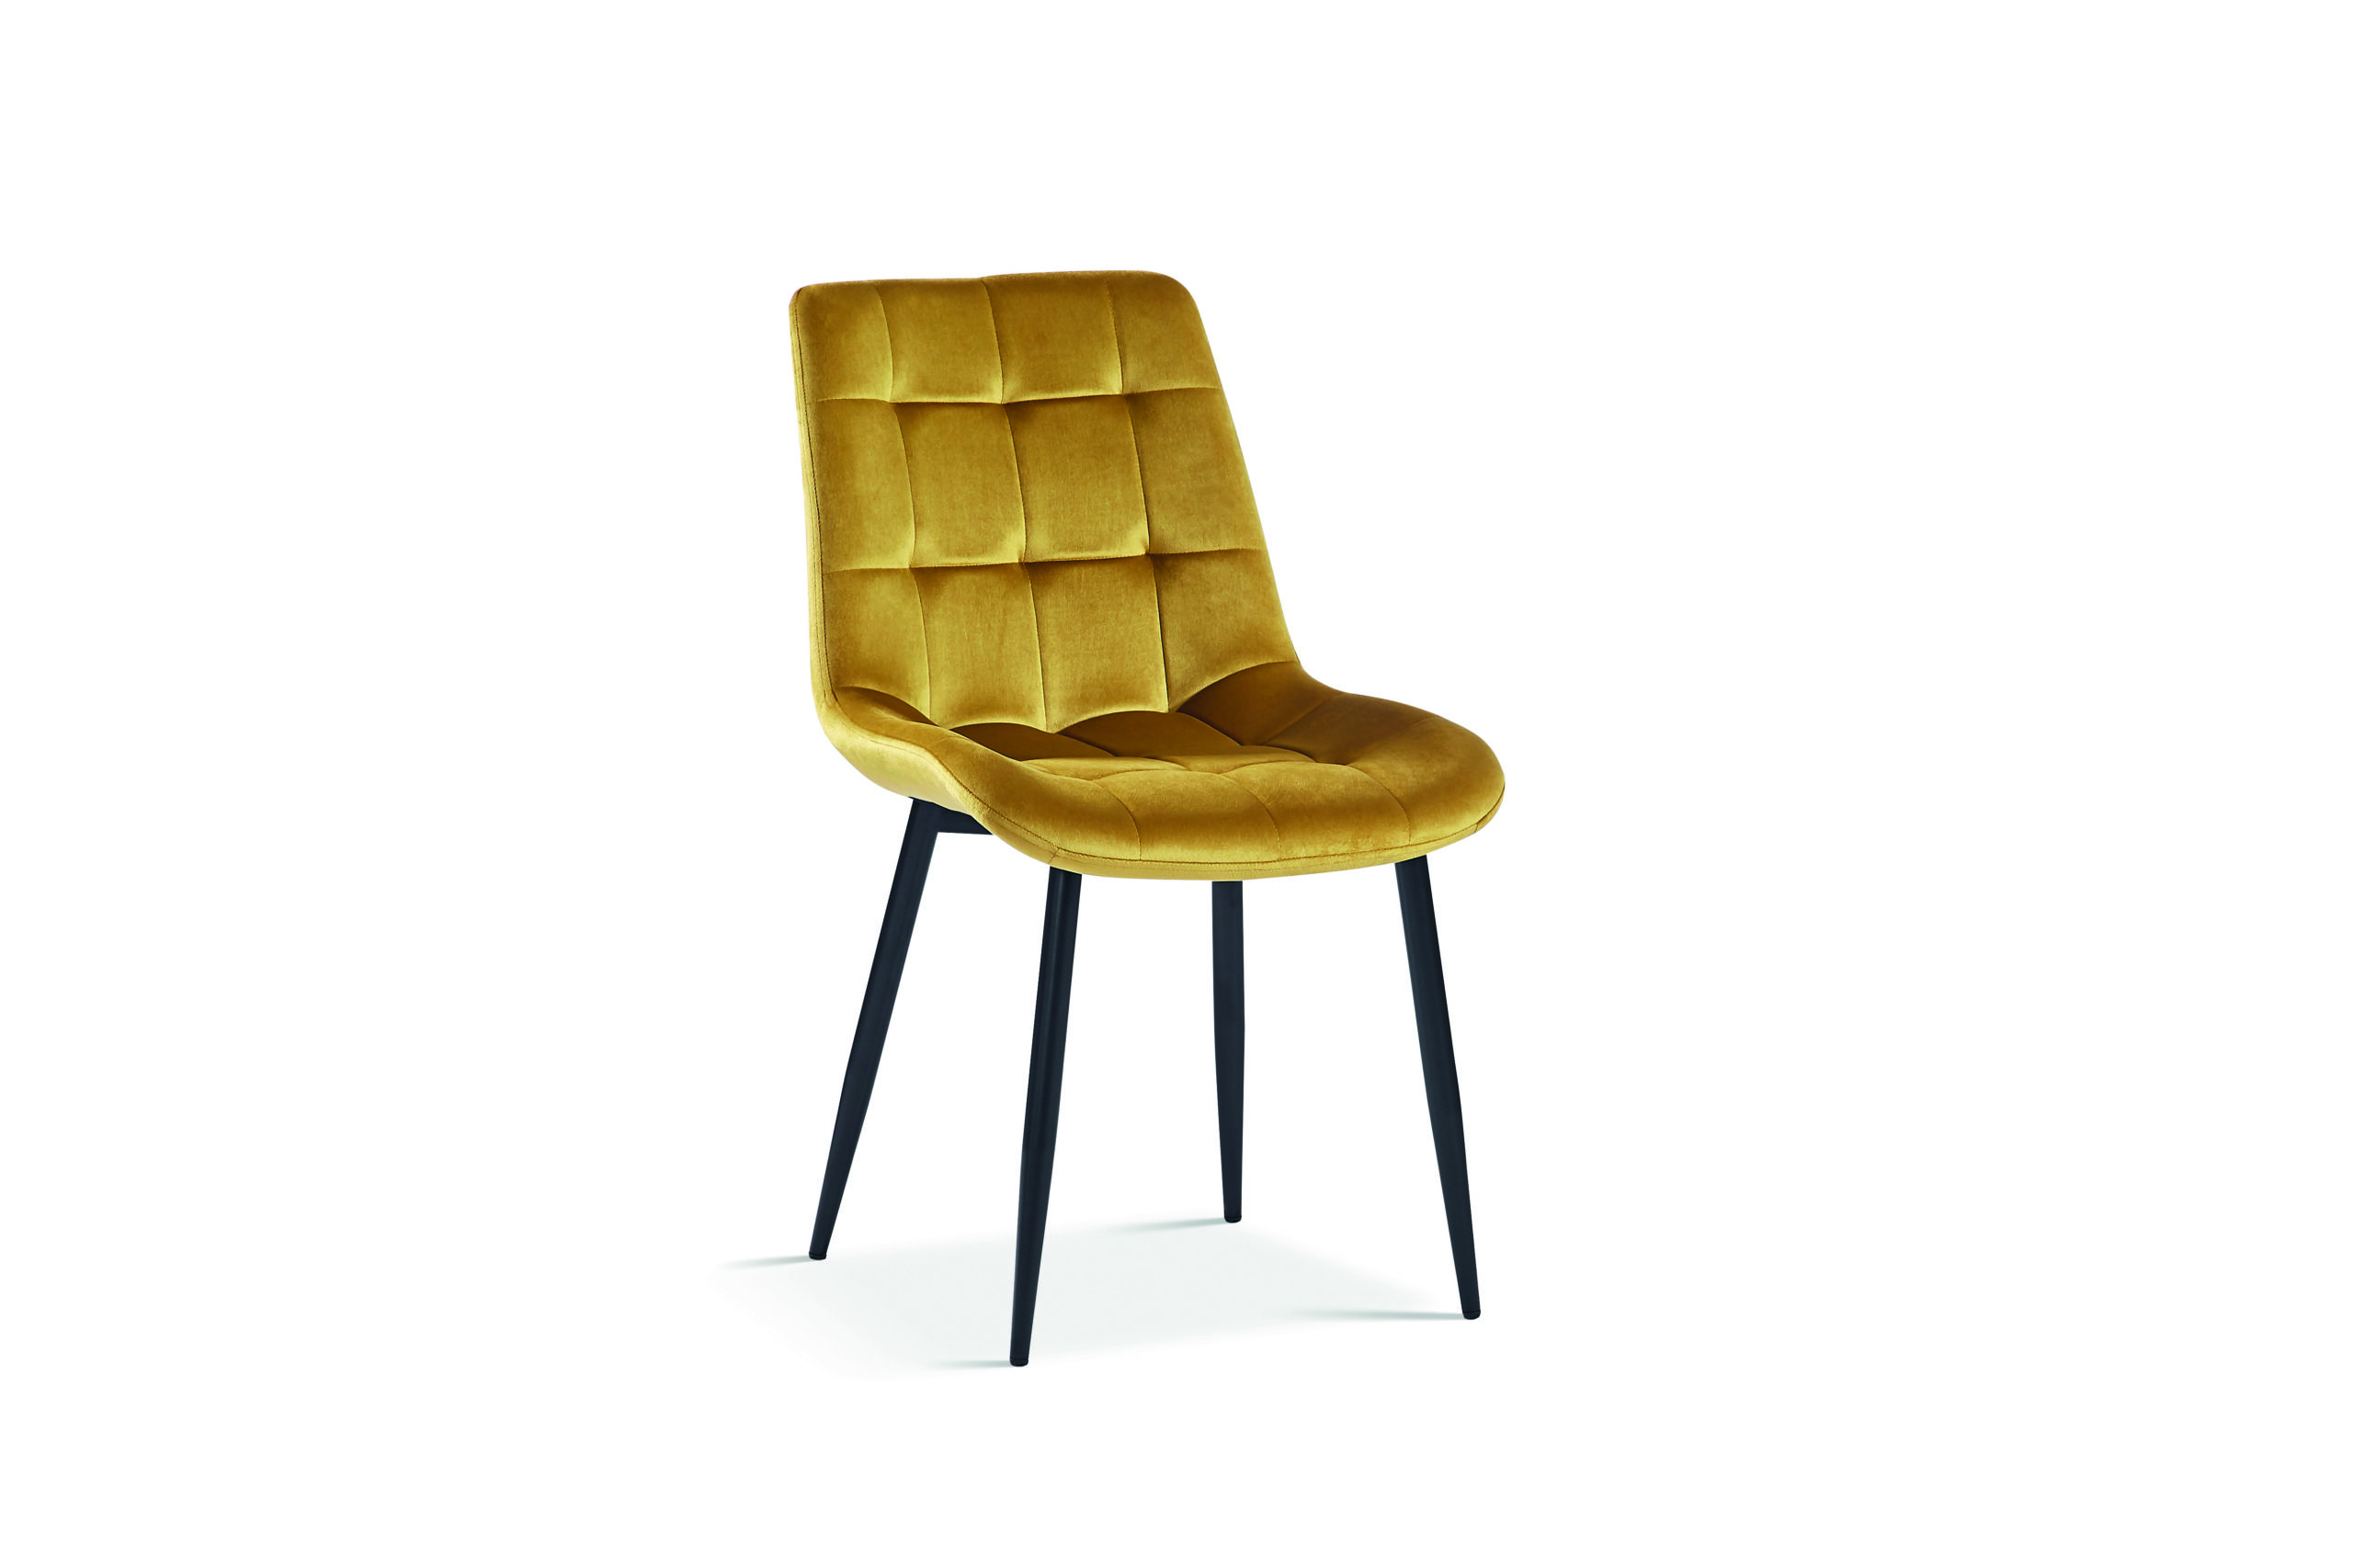 Chaise jaune or ocre moderne confortable en velours capitonné pieds métal noirs